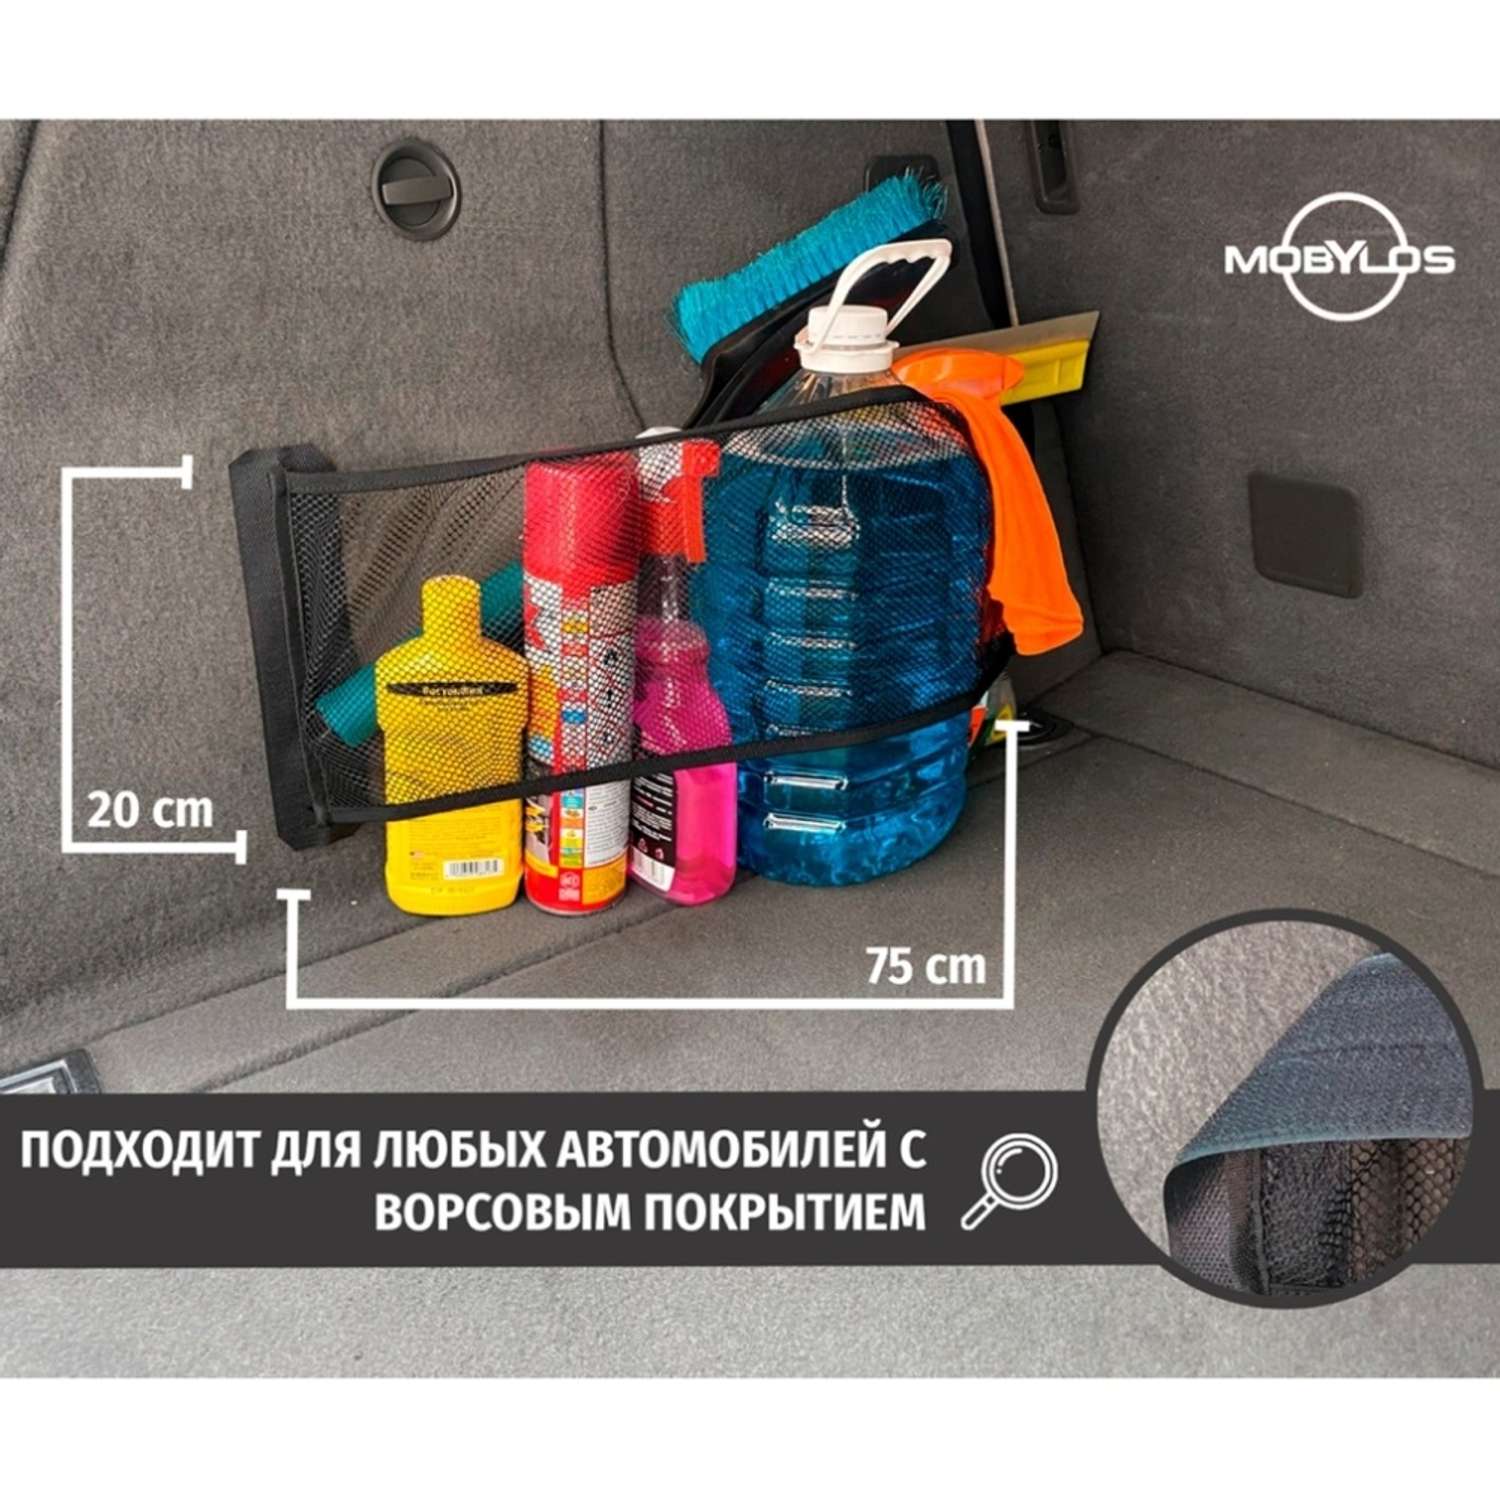 Сетка в багажник Mobylos Сетка-карман в багажник 75х20 см - фото 2